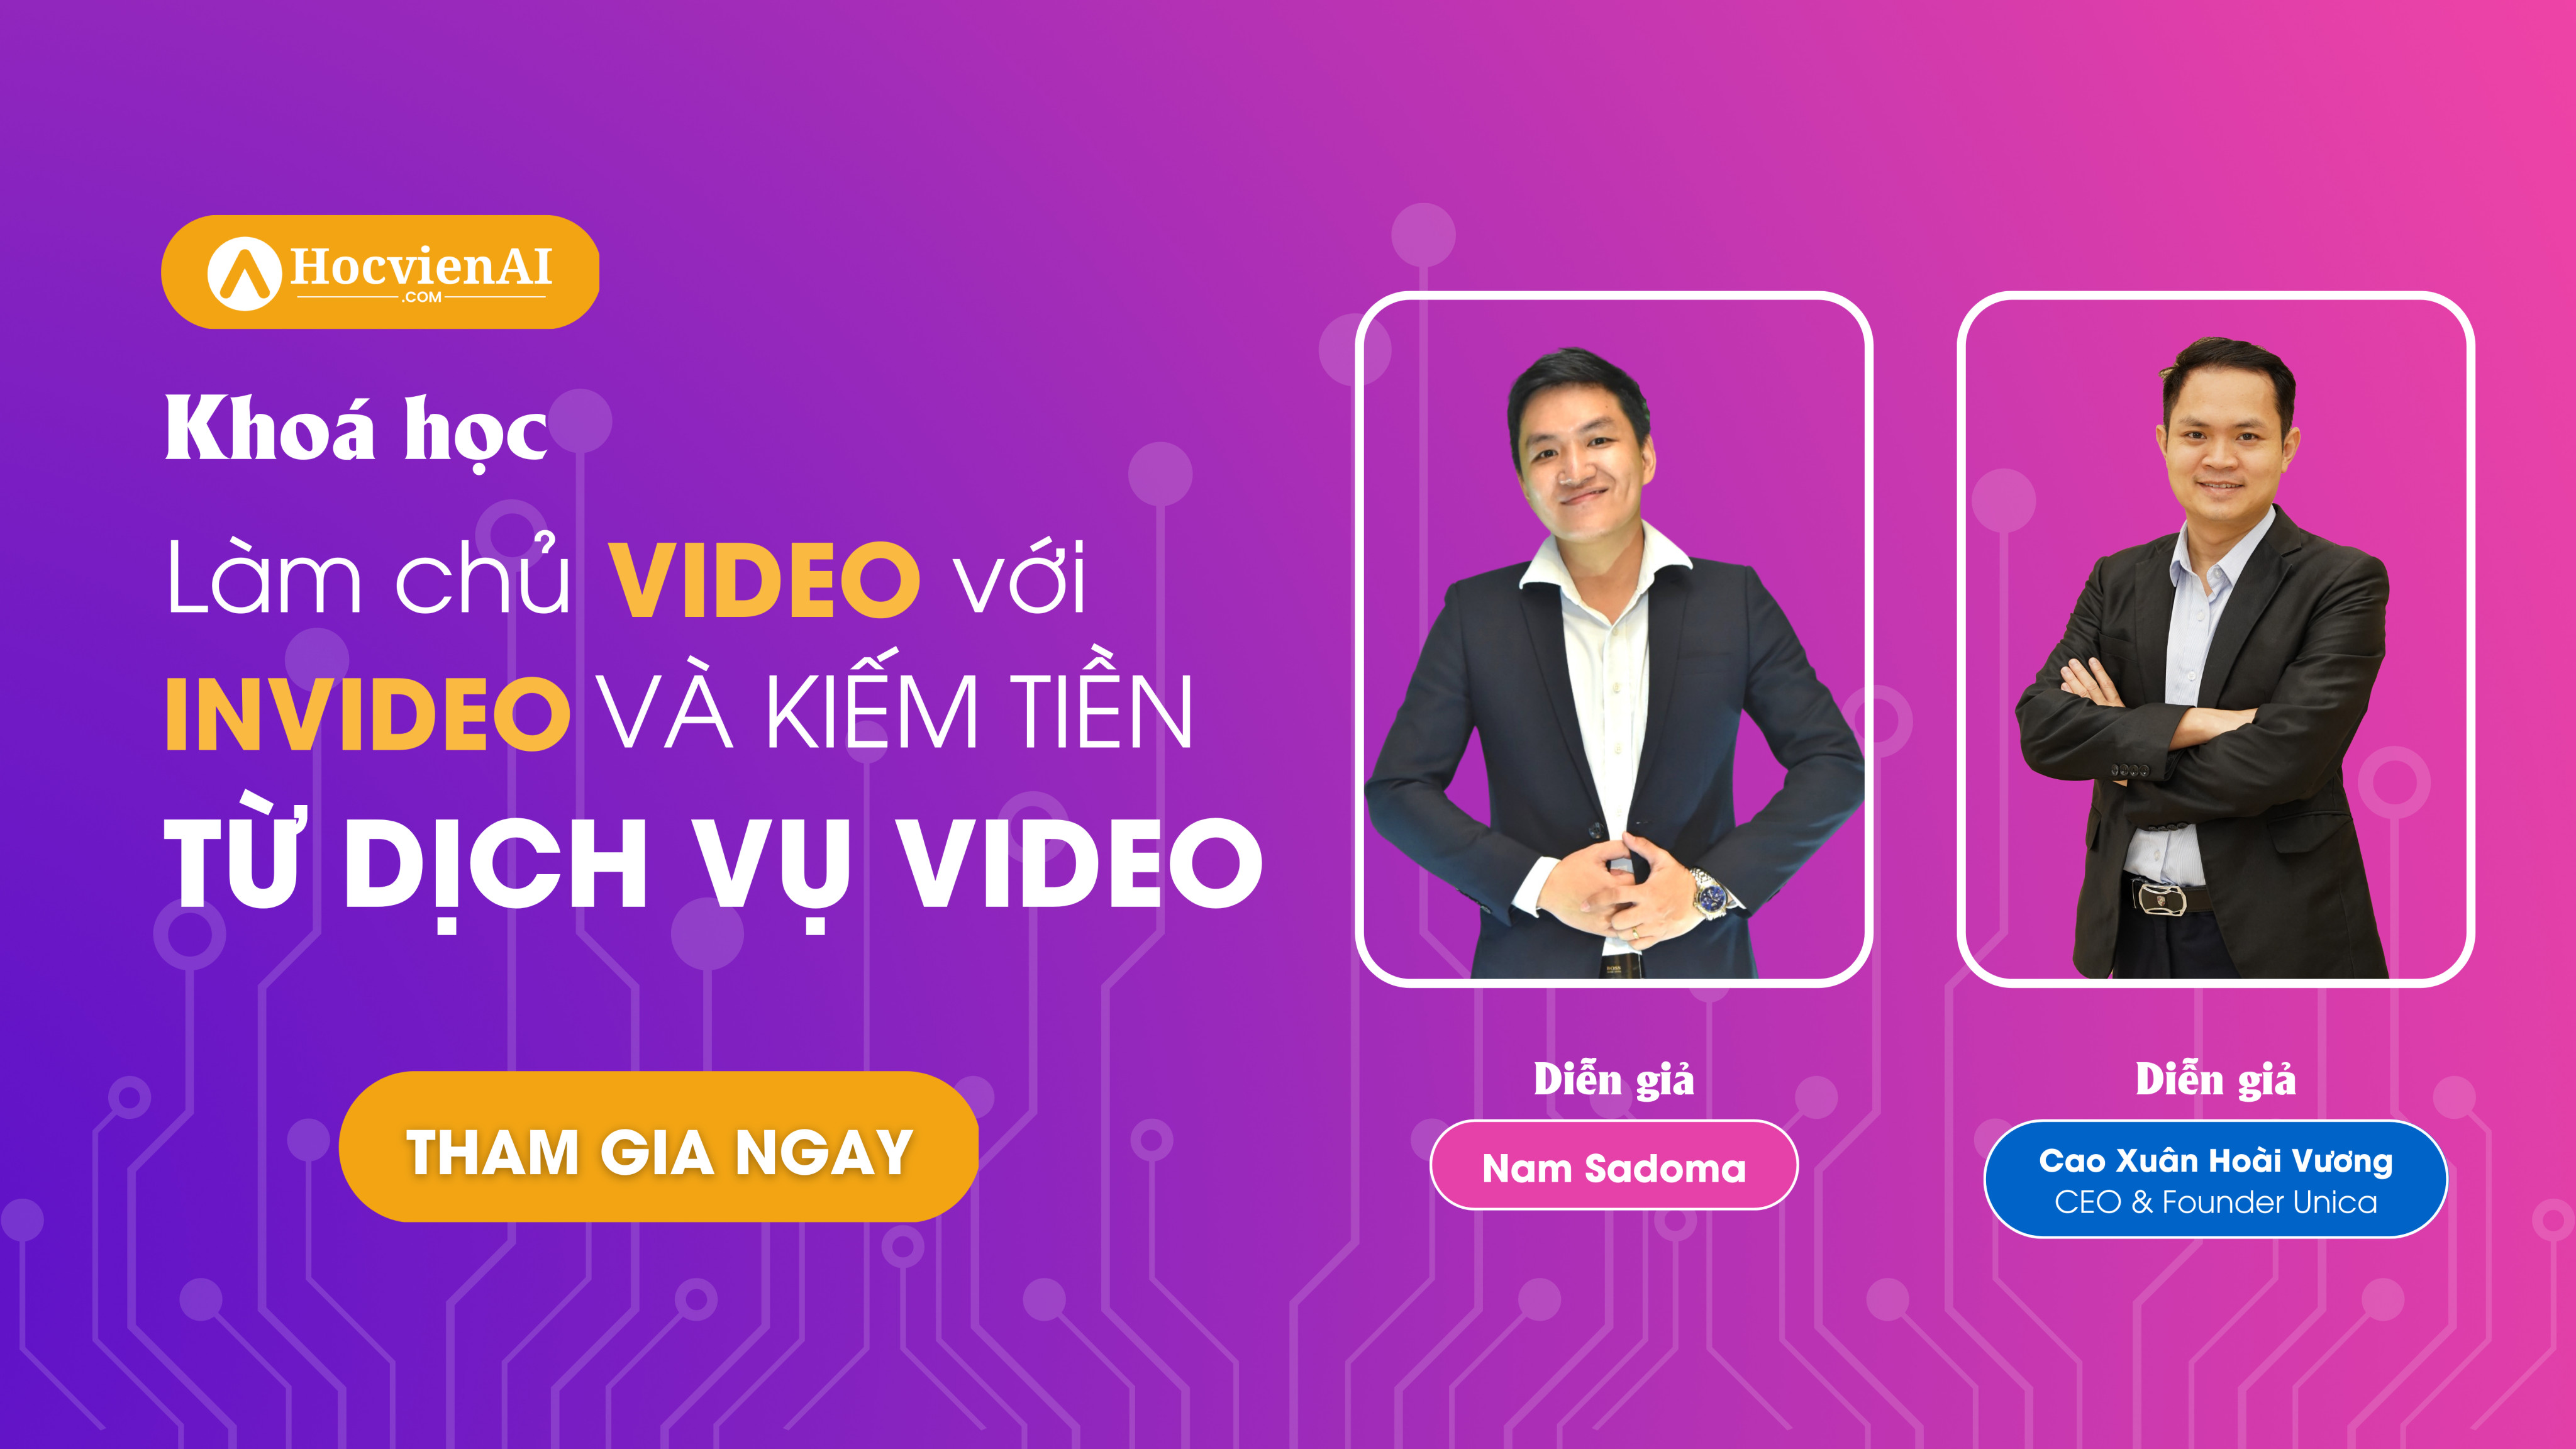 Làm chủ Video với Invideo và kiếm tiền từ dịch vụ Video